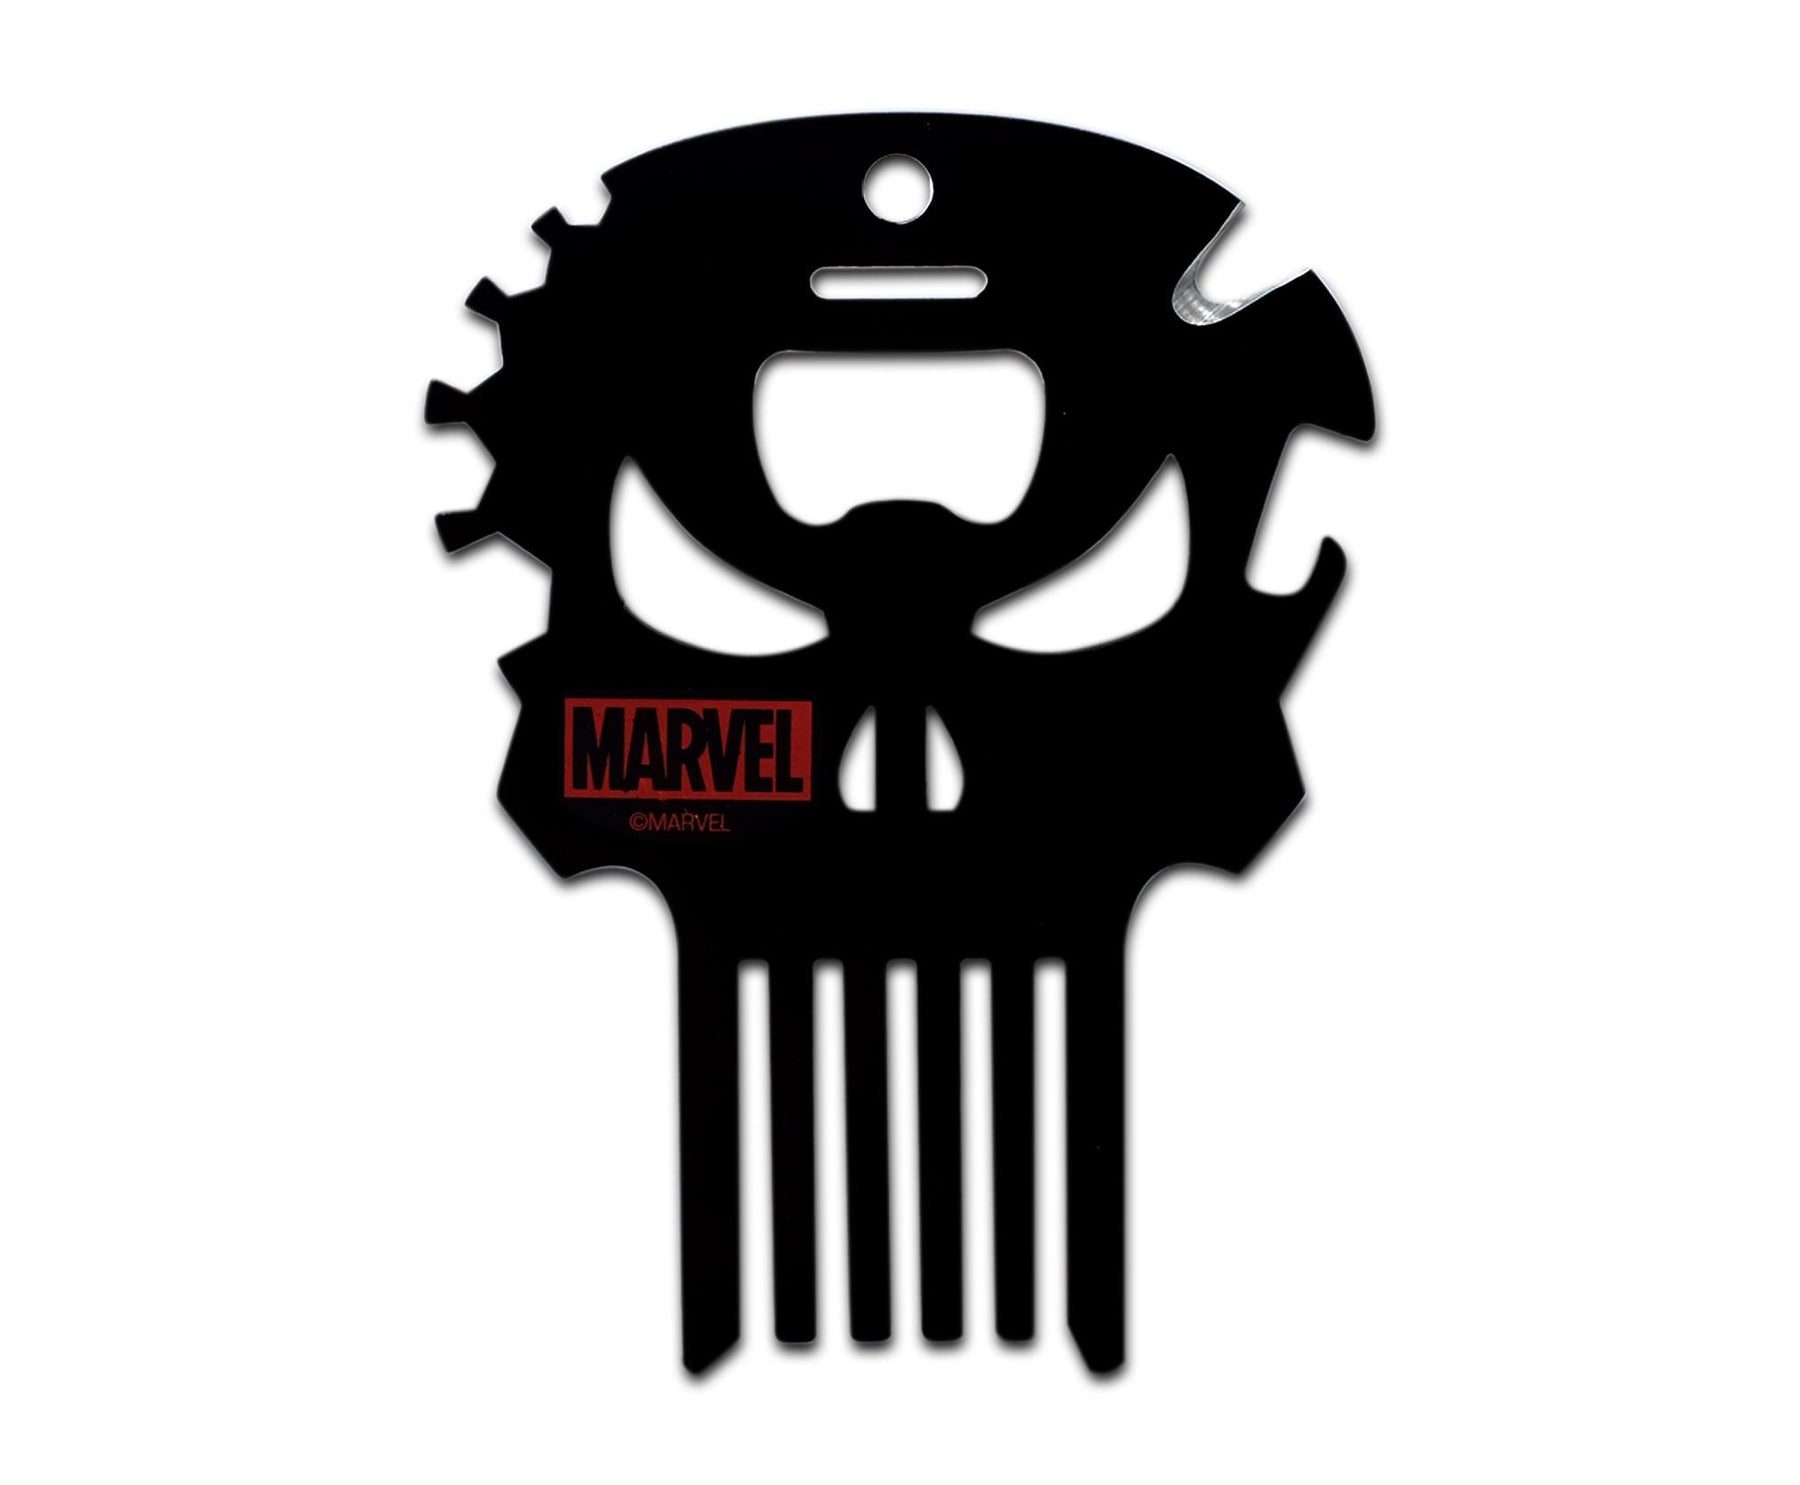 Marvel Punisher Skull 7-In-1 Multitool Kit